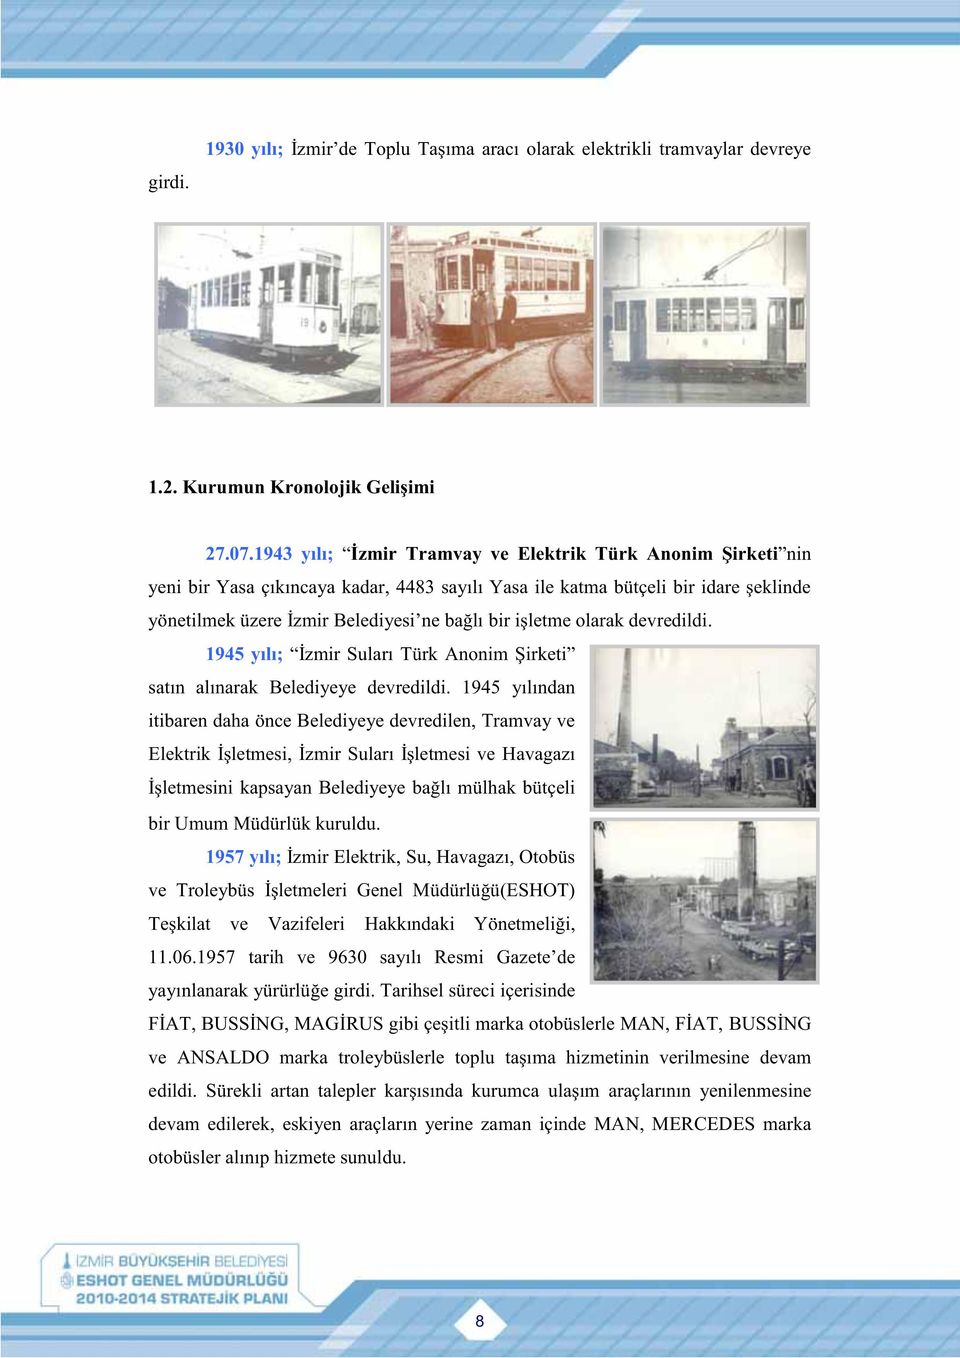 işletme olarak devredildi. 1945 yılı; İzmir Suları Türk Anonim Şirketi satın alınarak Belediyeye devredildi.